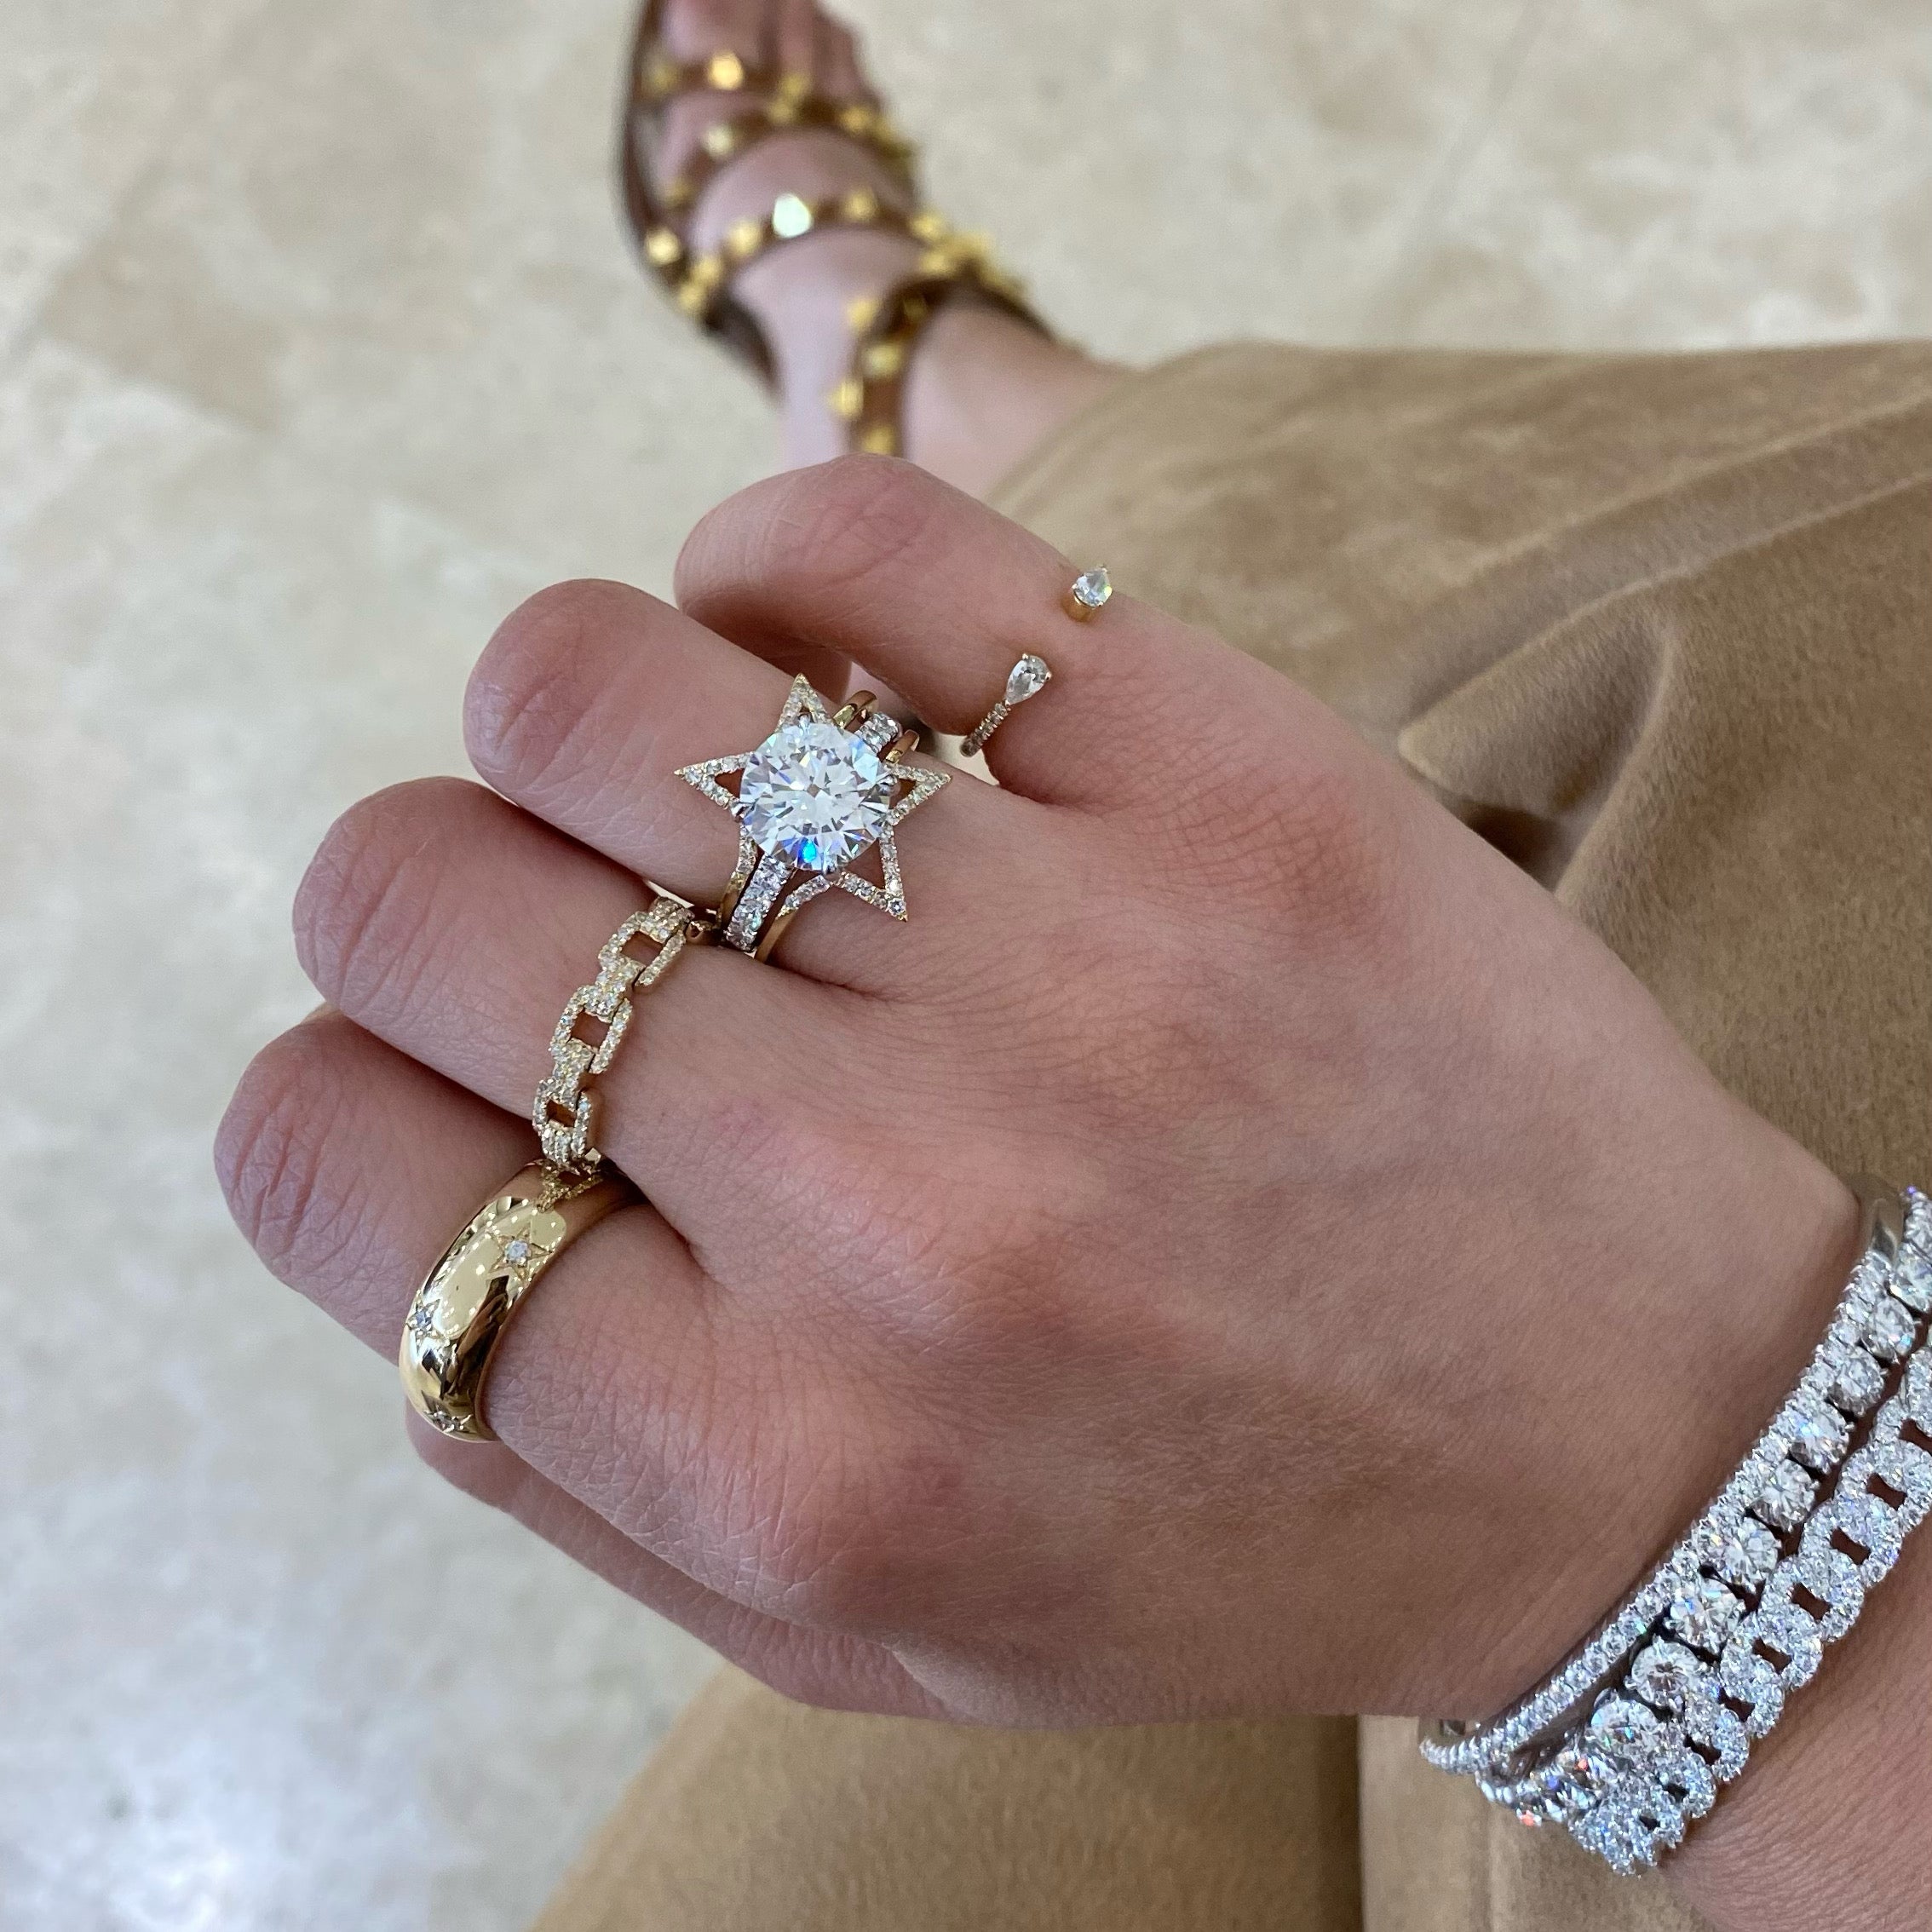 Diamond Curb Chain Ring 14K White Gold / 8